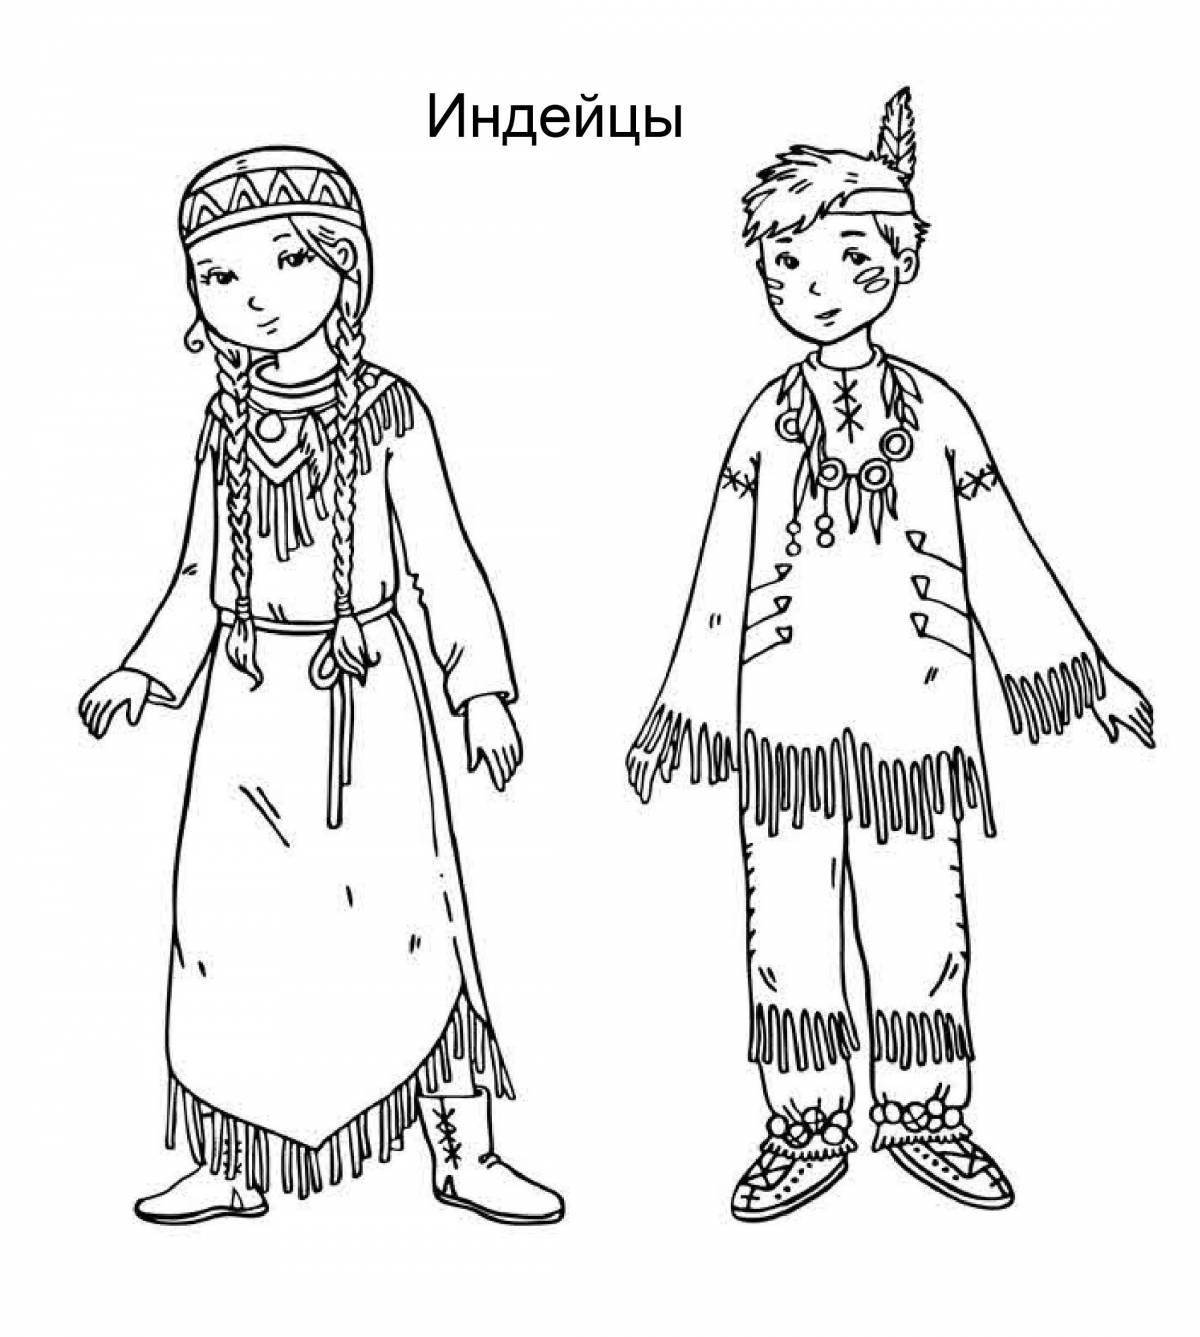 Царственный чувашский национальный костюм для детей